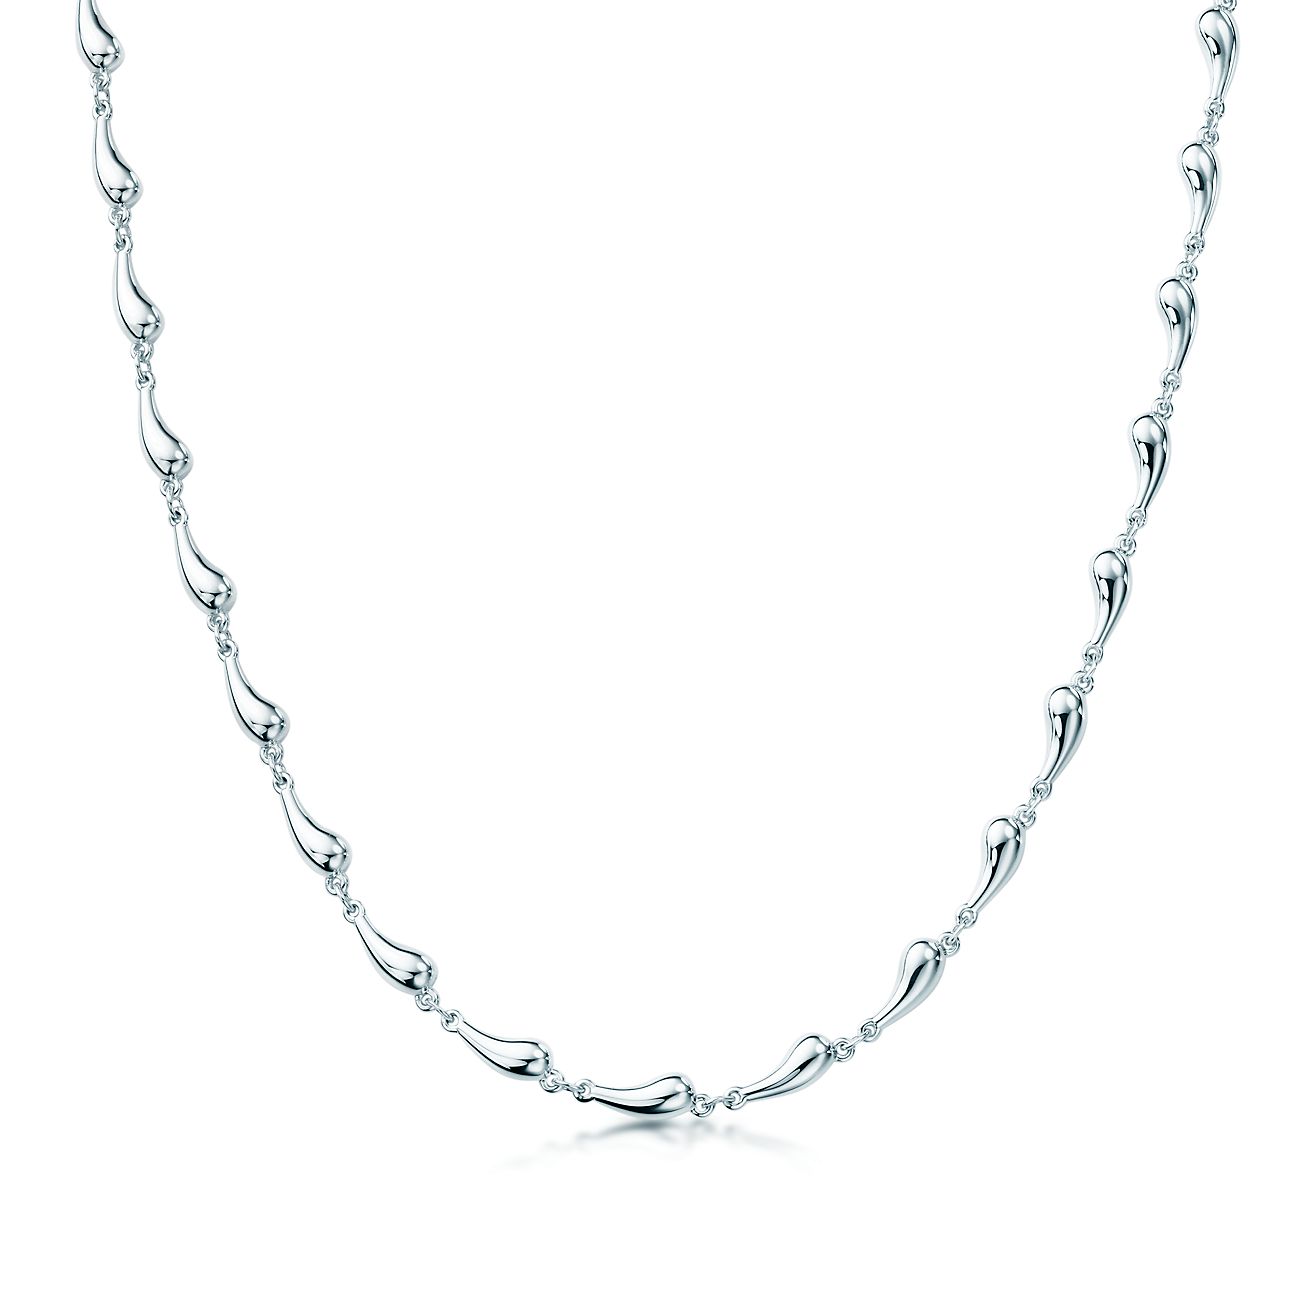 Elsa Peretti® Teardrop necklace in 